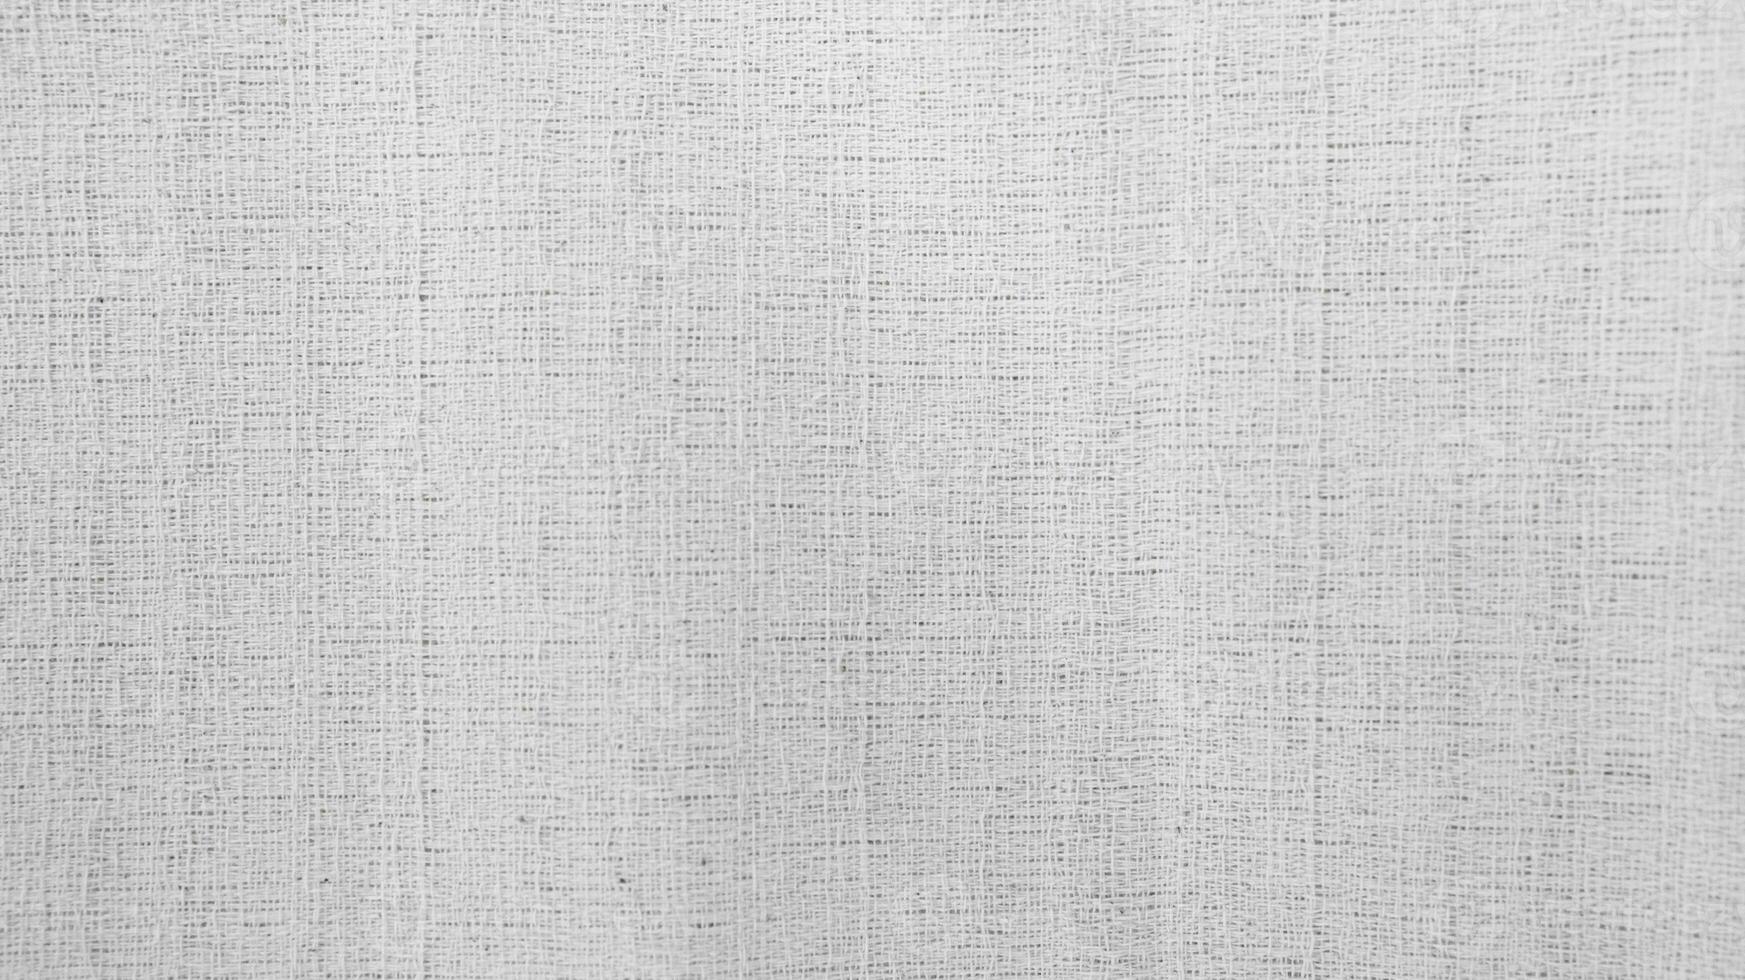 orgânico tecido algodão pano de fundo branco linho tela de pintura amassado natural algodão tecido natural feito à mão linho topo Visão fundo orgânico eco têxteis branco tecido linho textura foto